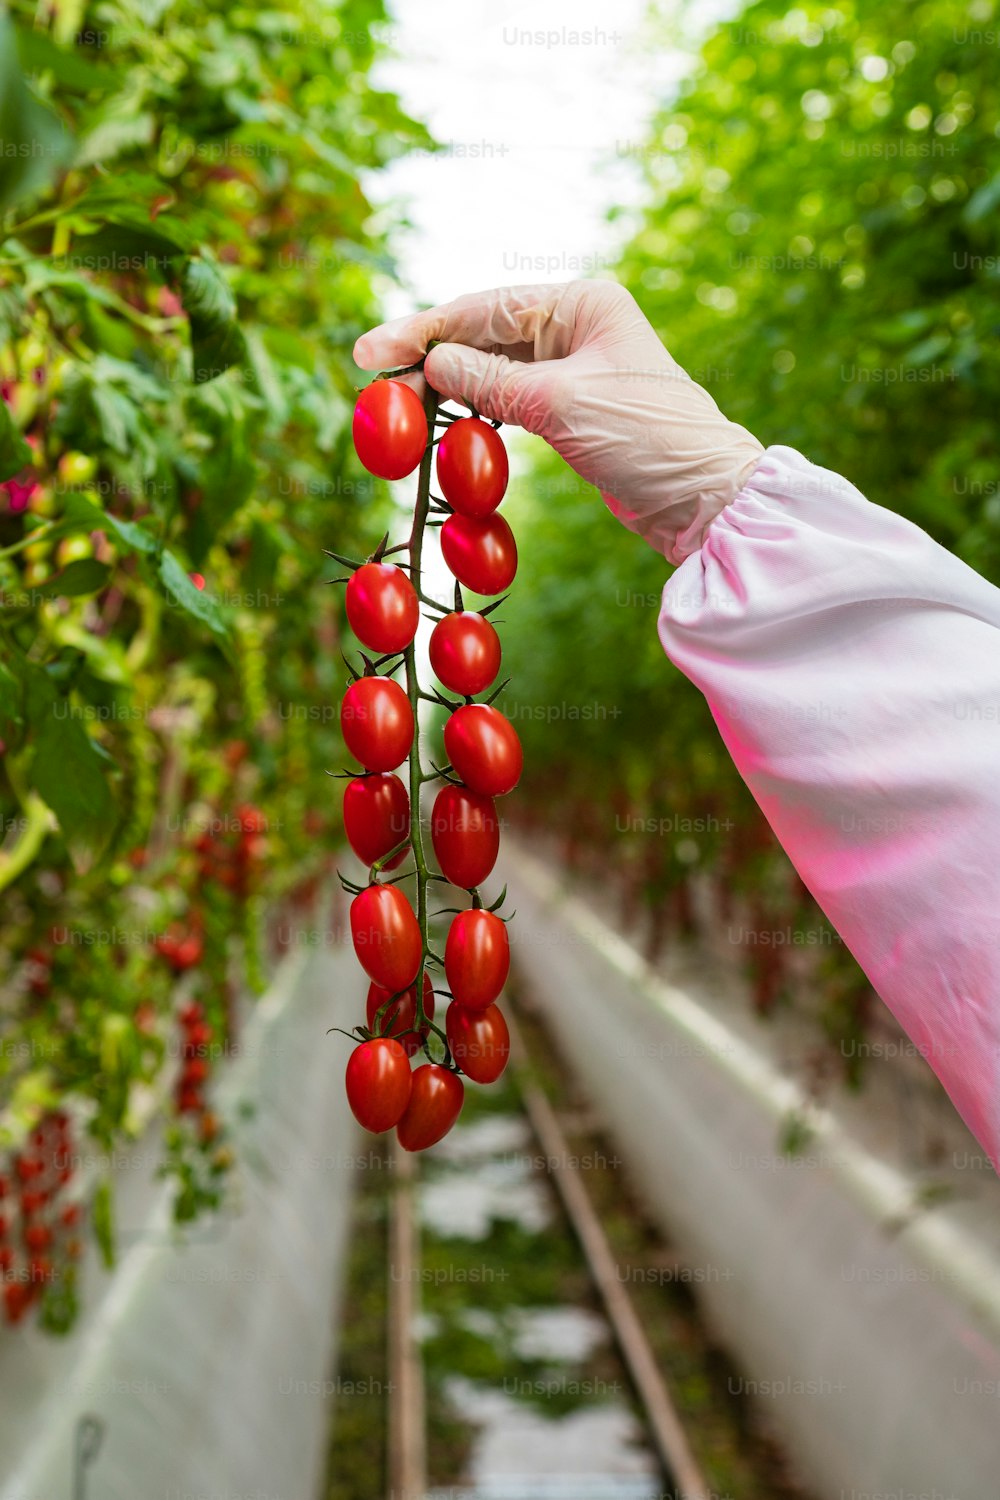 Una mano sosteniendo un racimo de tomates en un invernadero